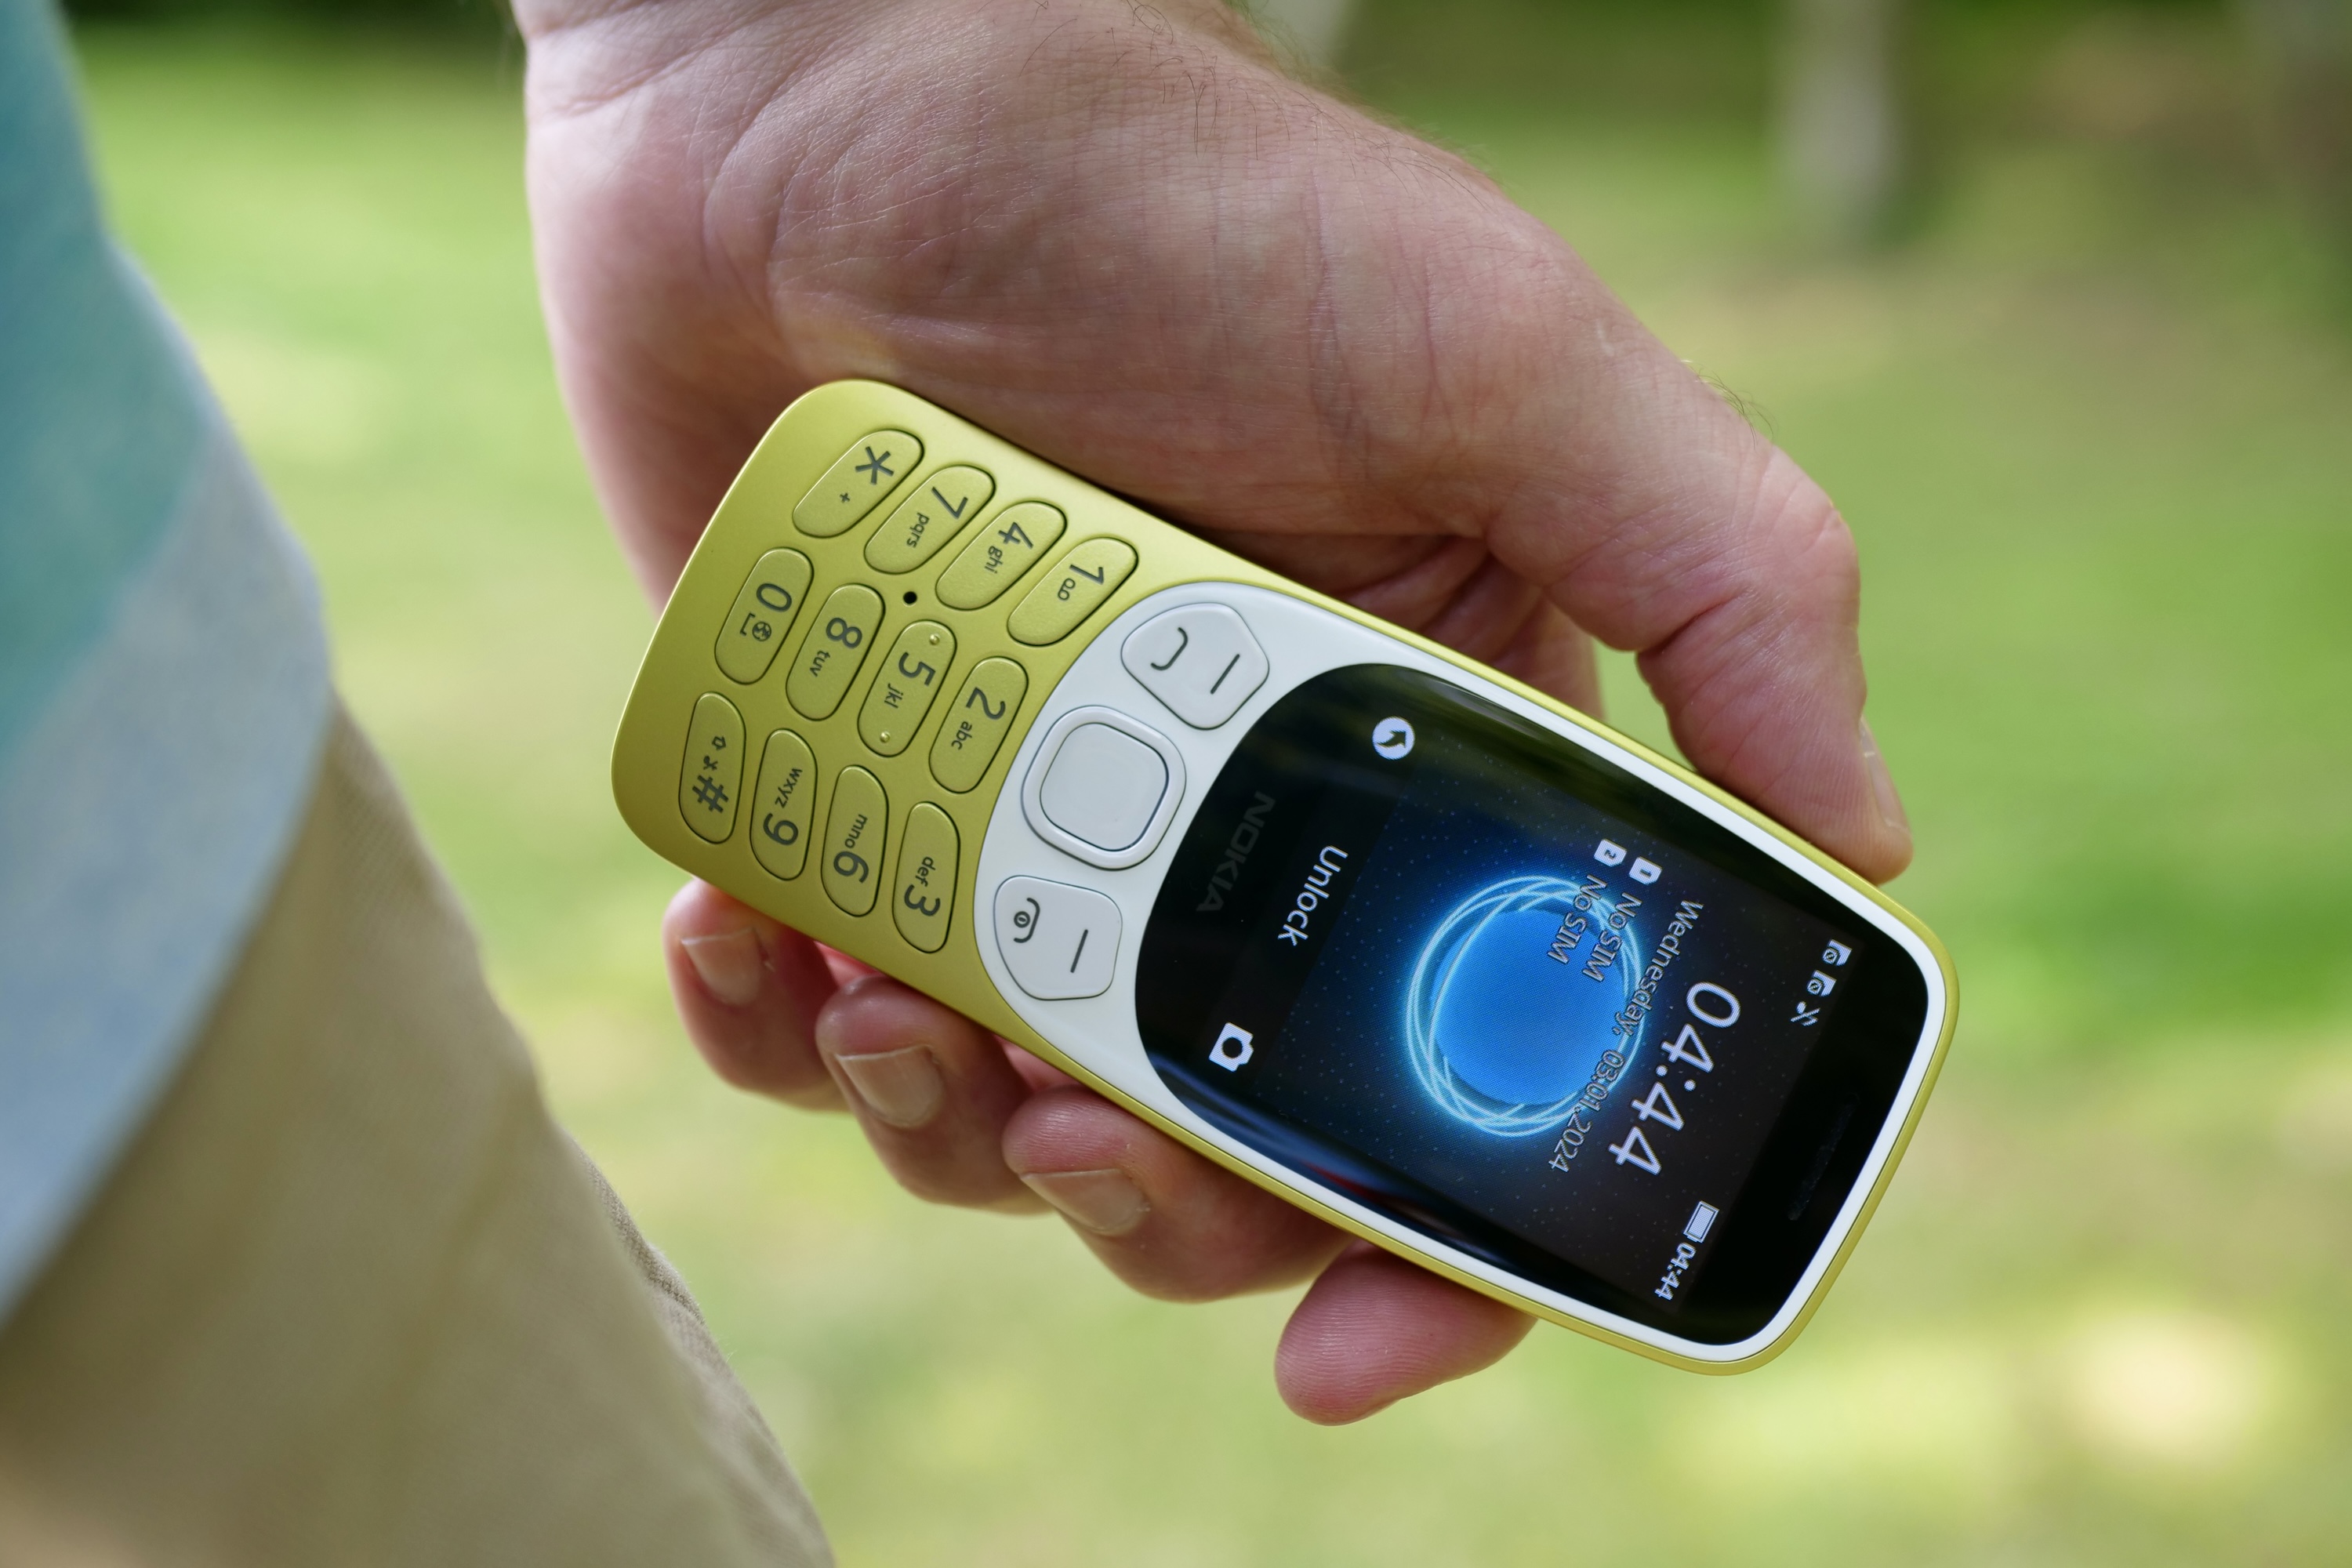 Una persona sosteniendo el Nokia 3210, mostrando la pantalla.